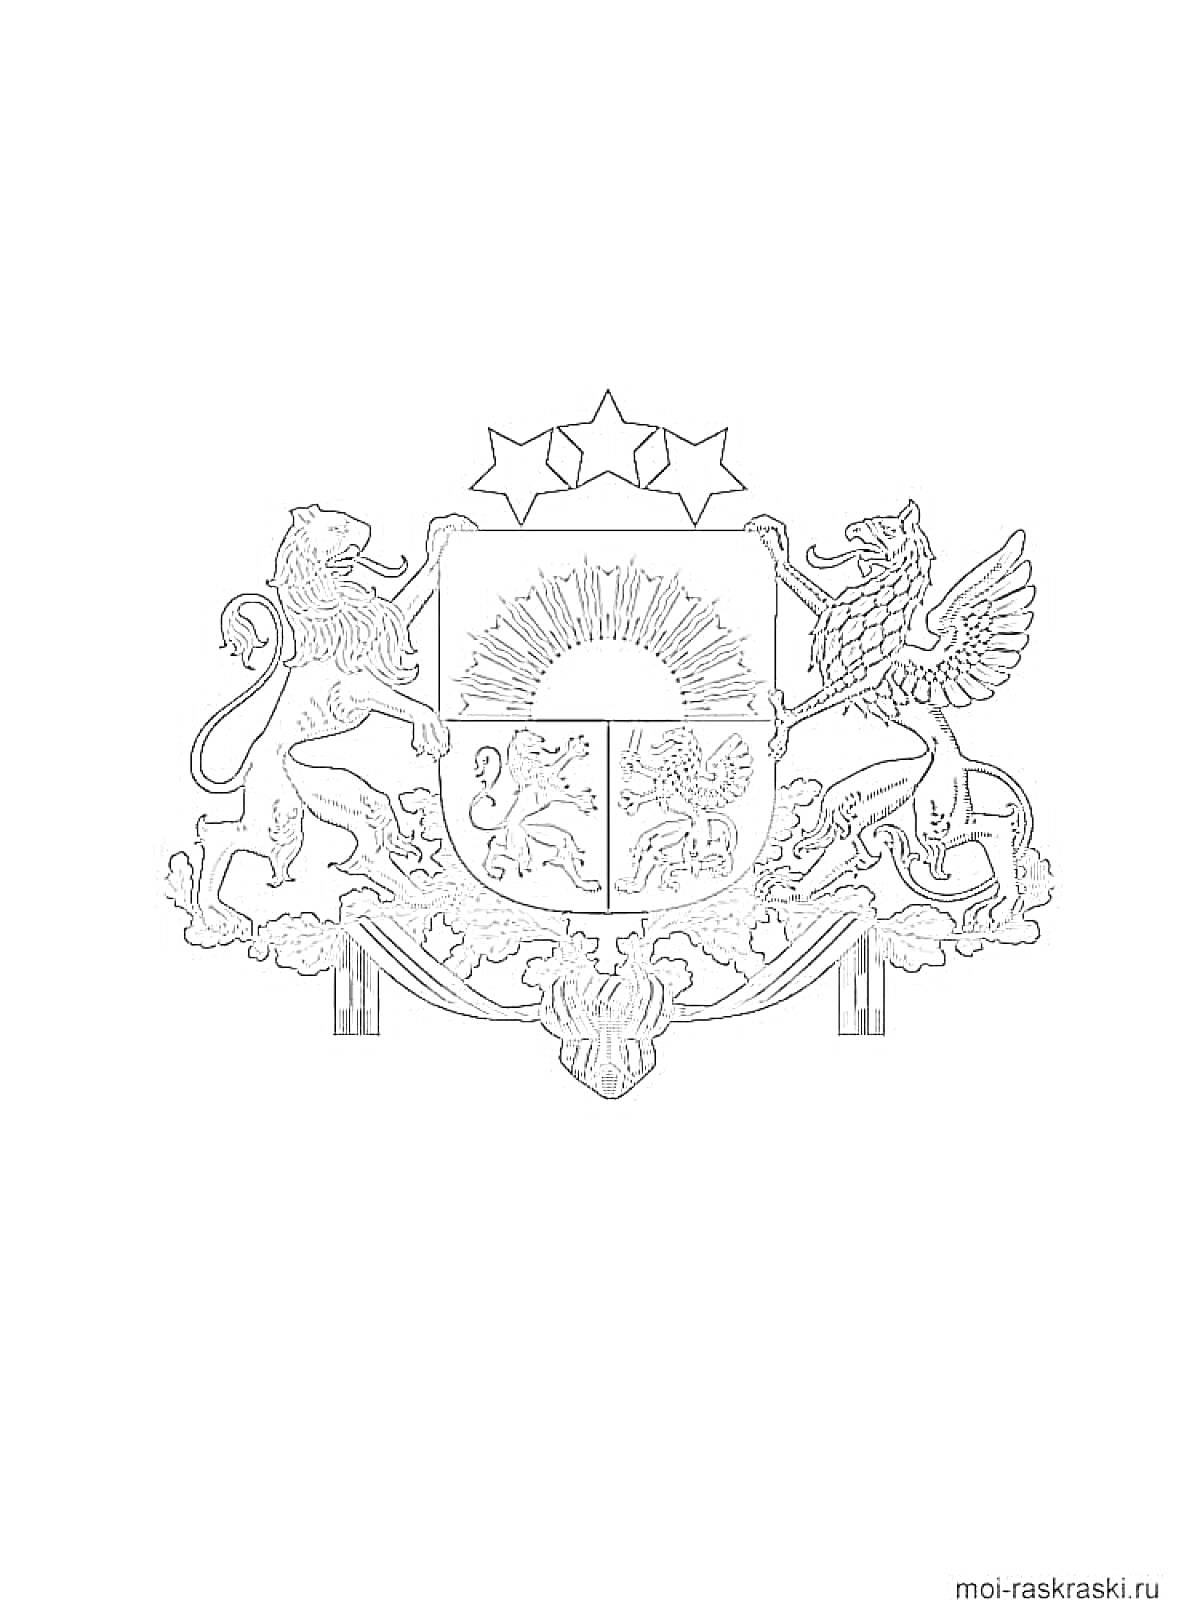 На раскраске изображено: Лев, Грифон, Солнце, Щит, Олень, Рыба, Герб России